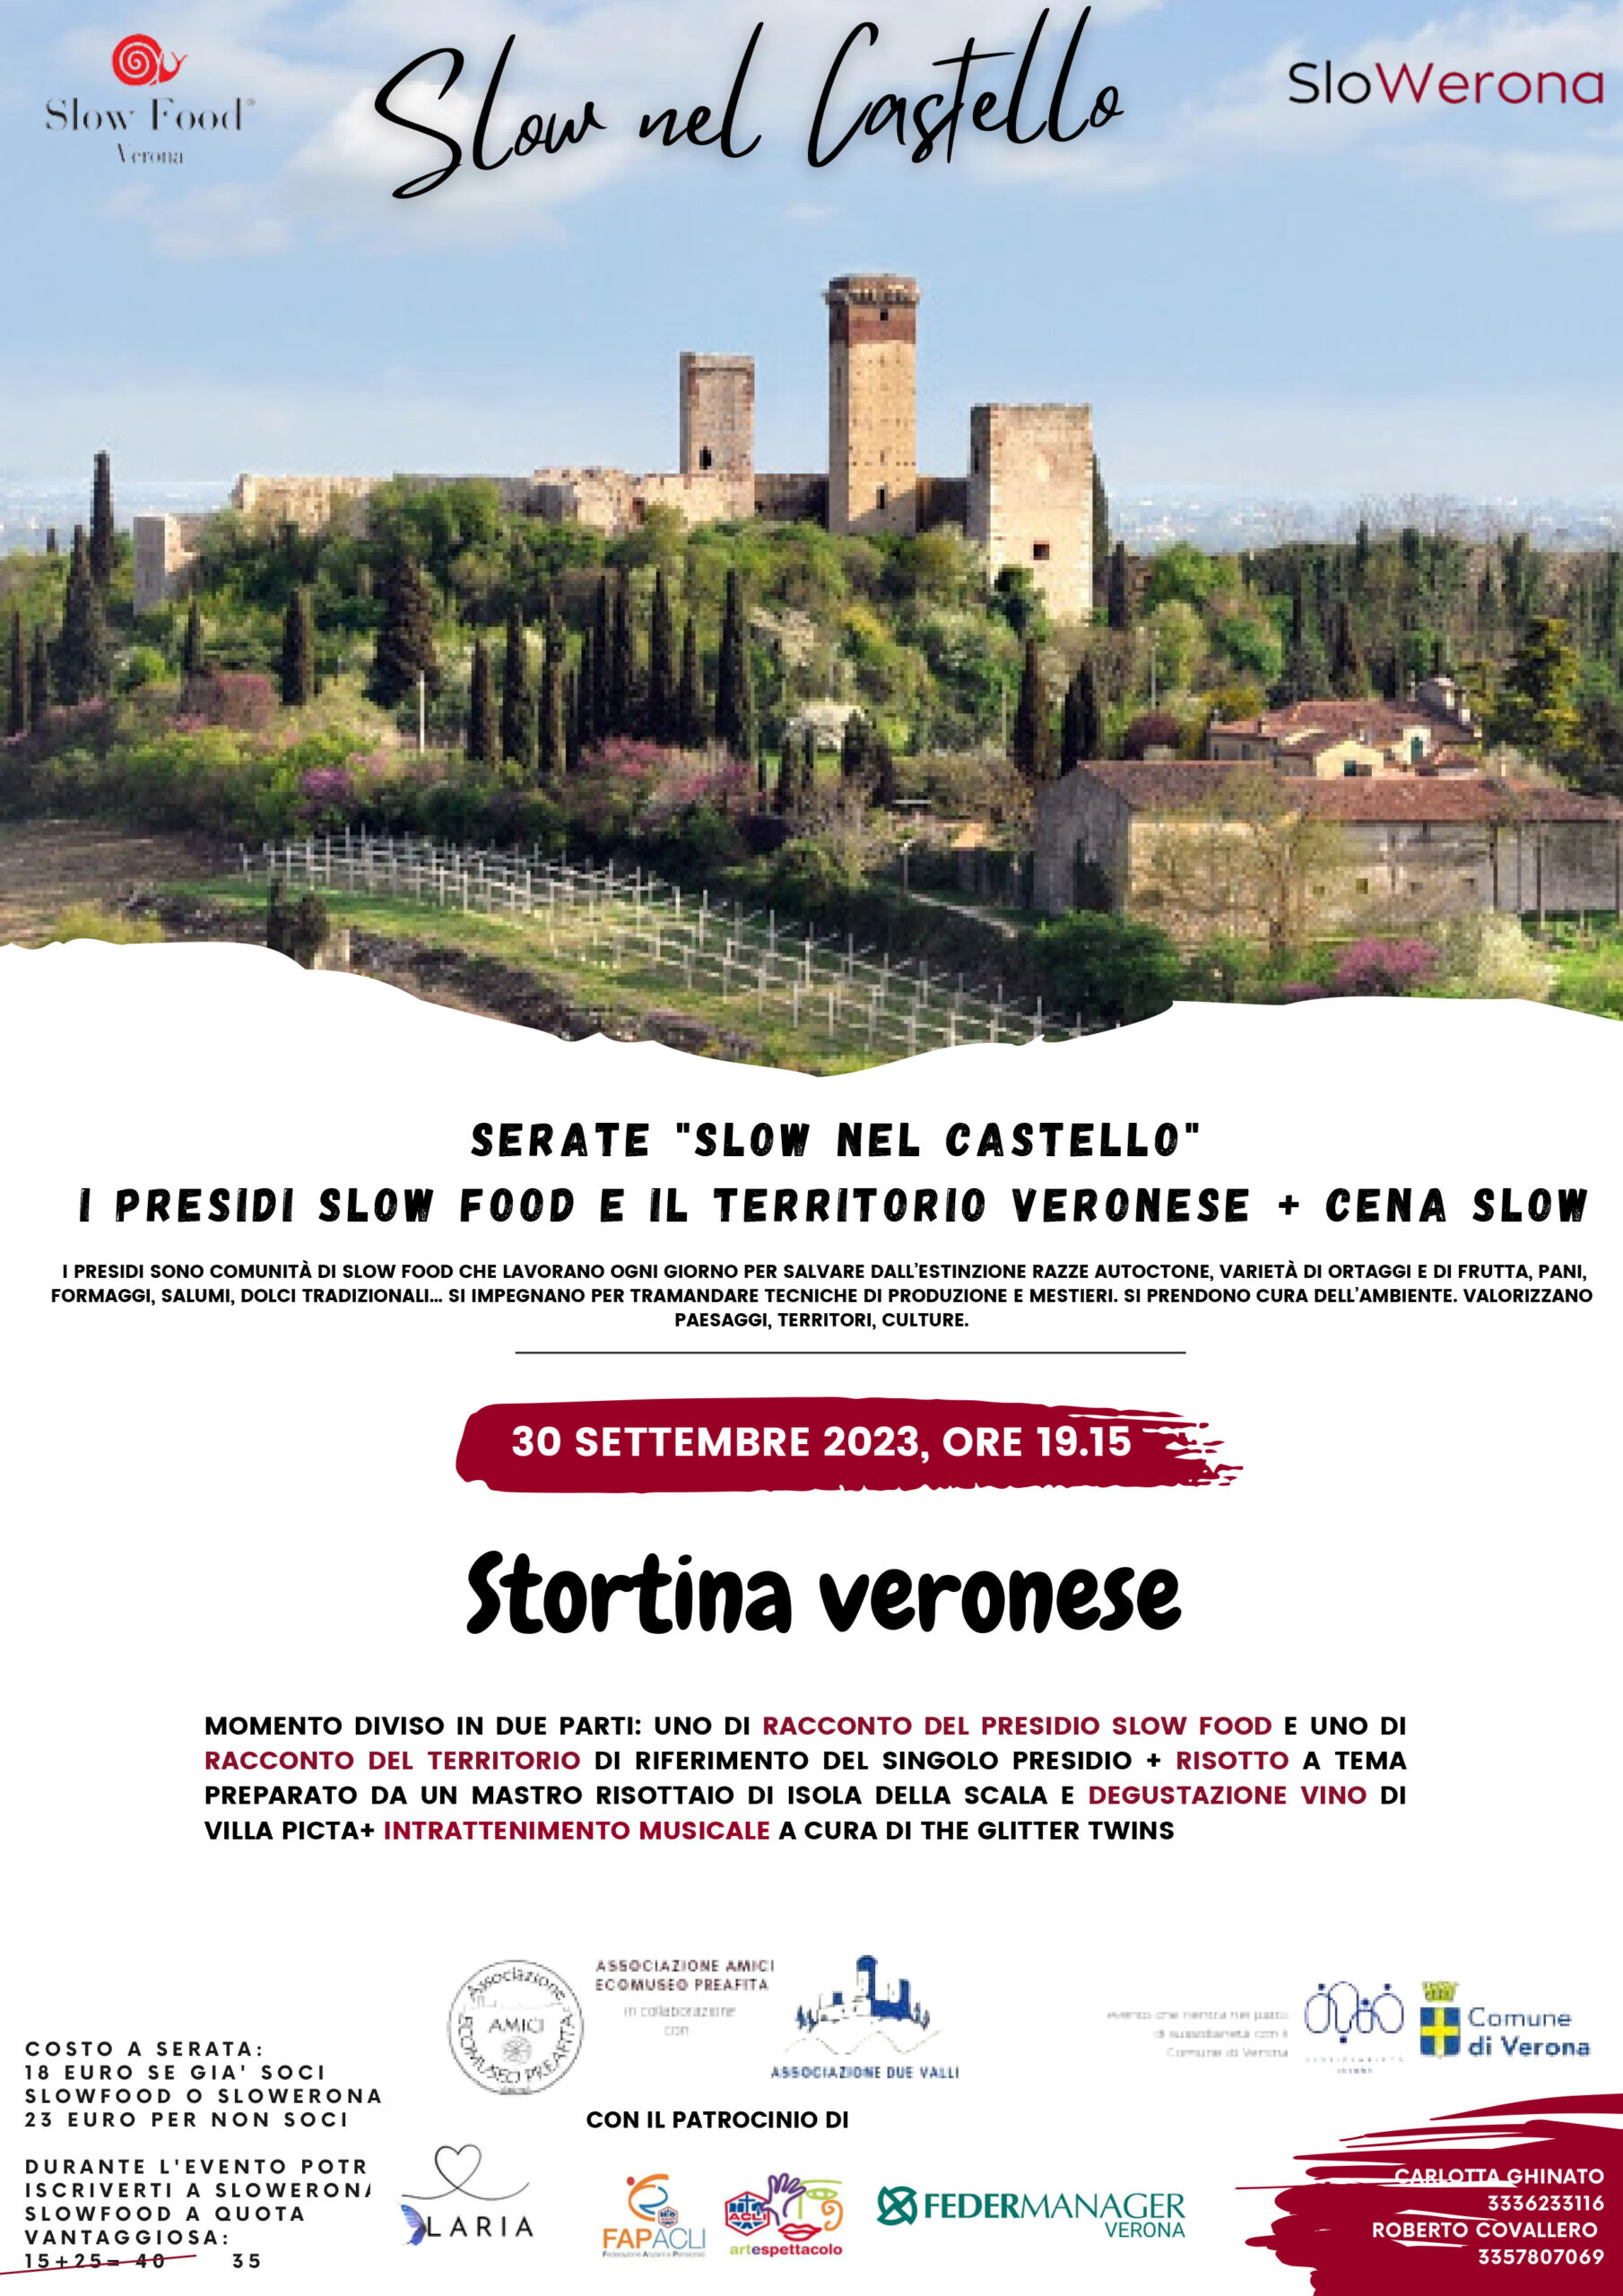 Stortina veronese, Le serate organizzata da Slow Food Verona dedicata alla scoperta dei Presidi in Polveriera al Castello di montorio in una cornice magica